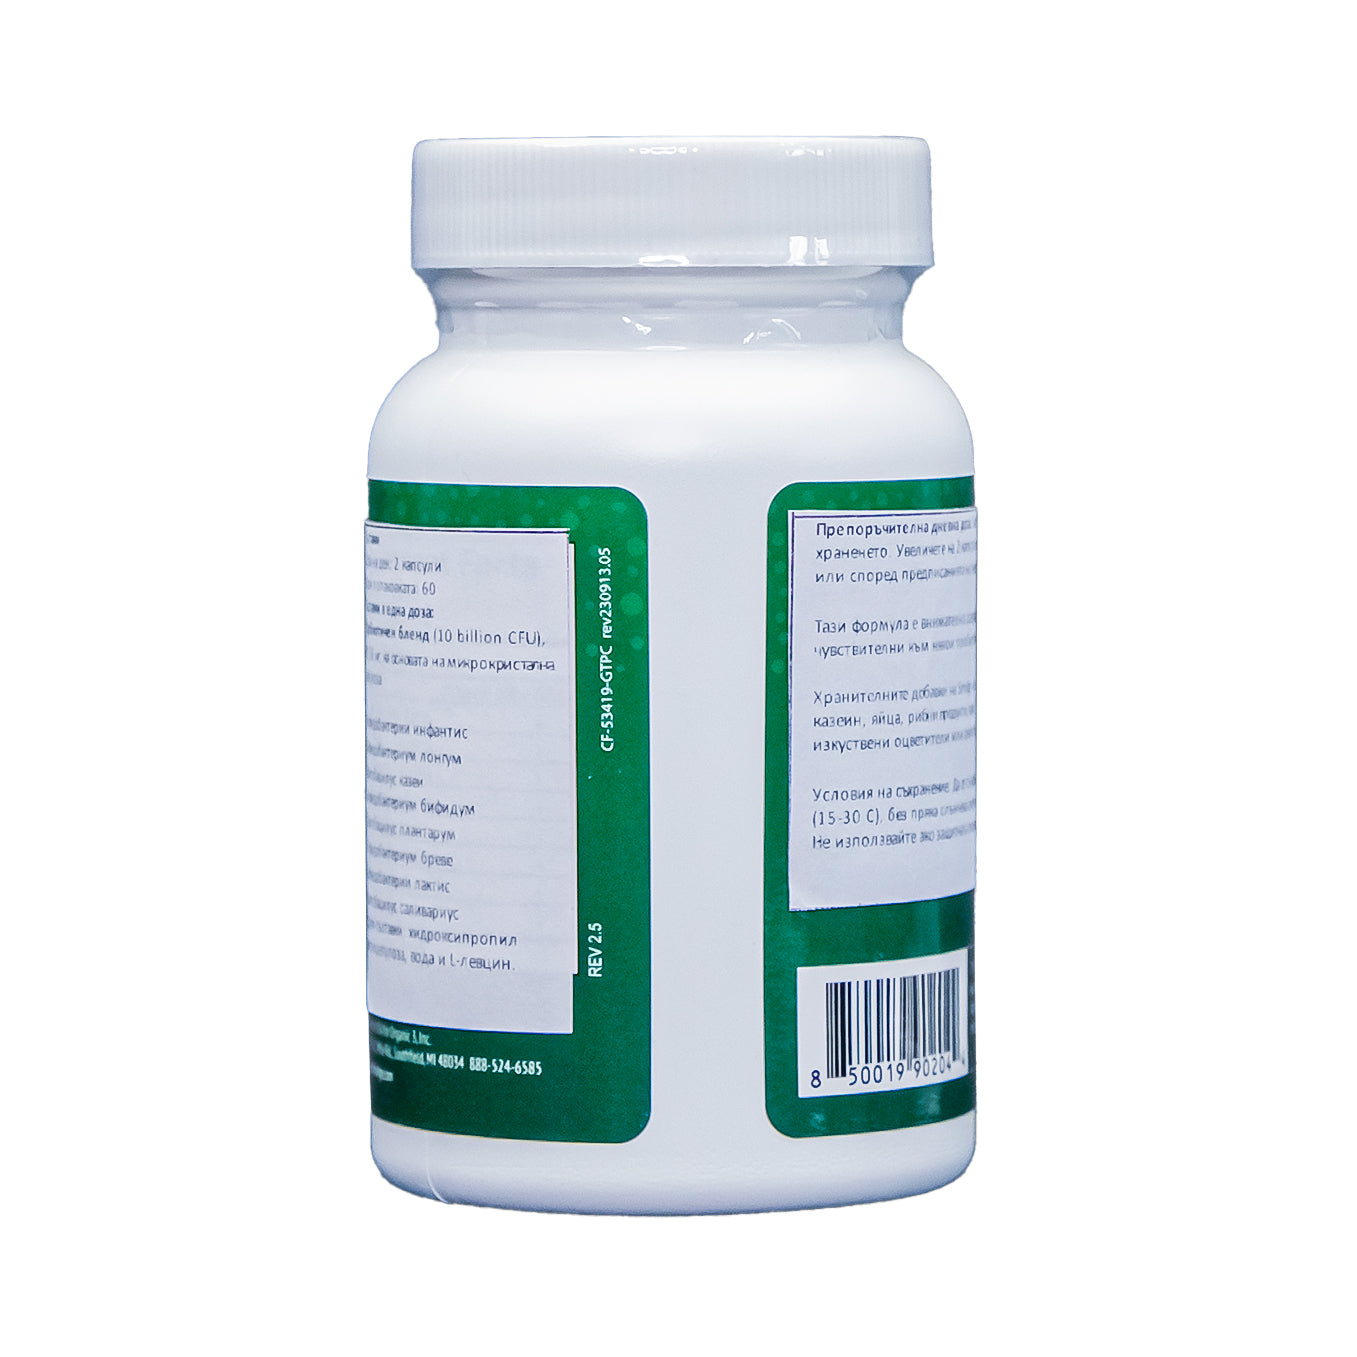 Smidge® Sensitive пробиотик - 60 капсули